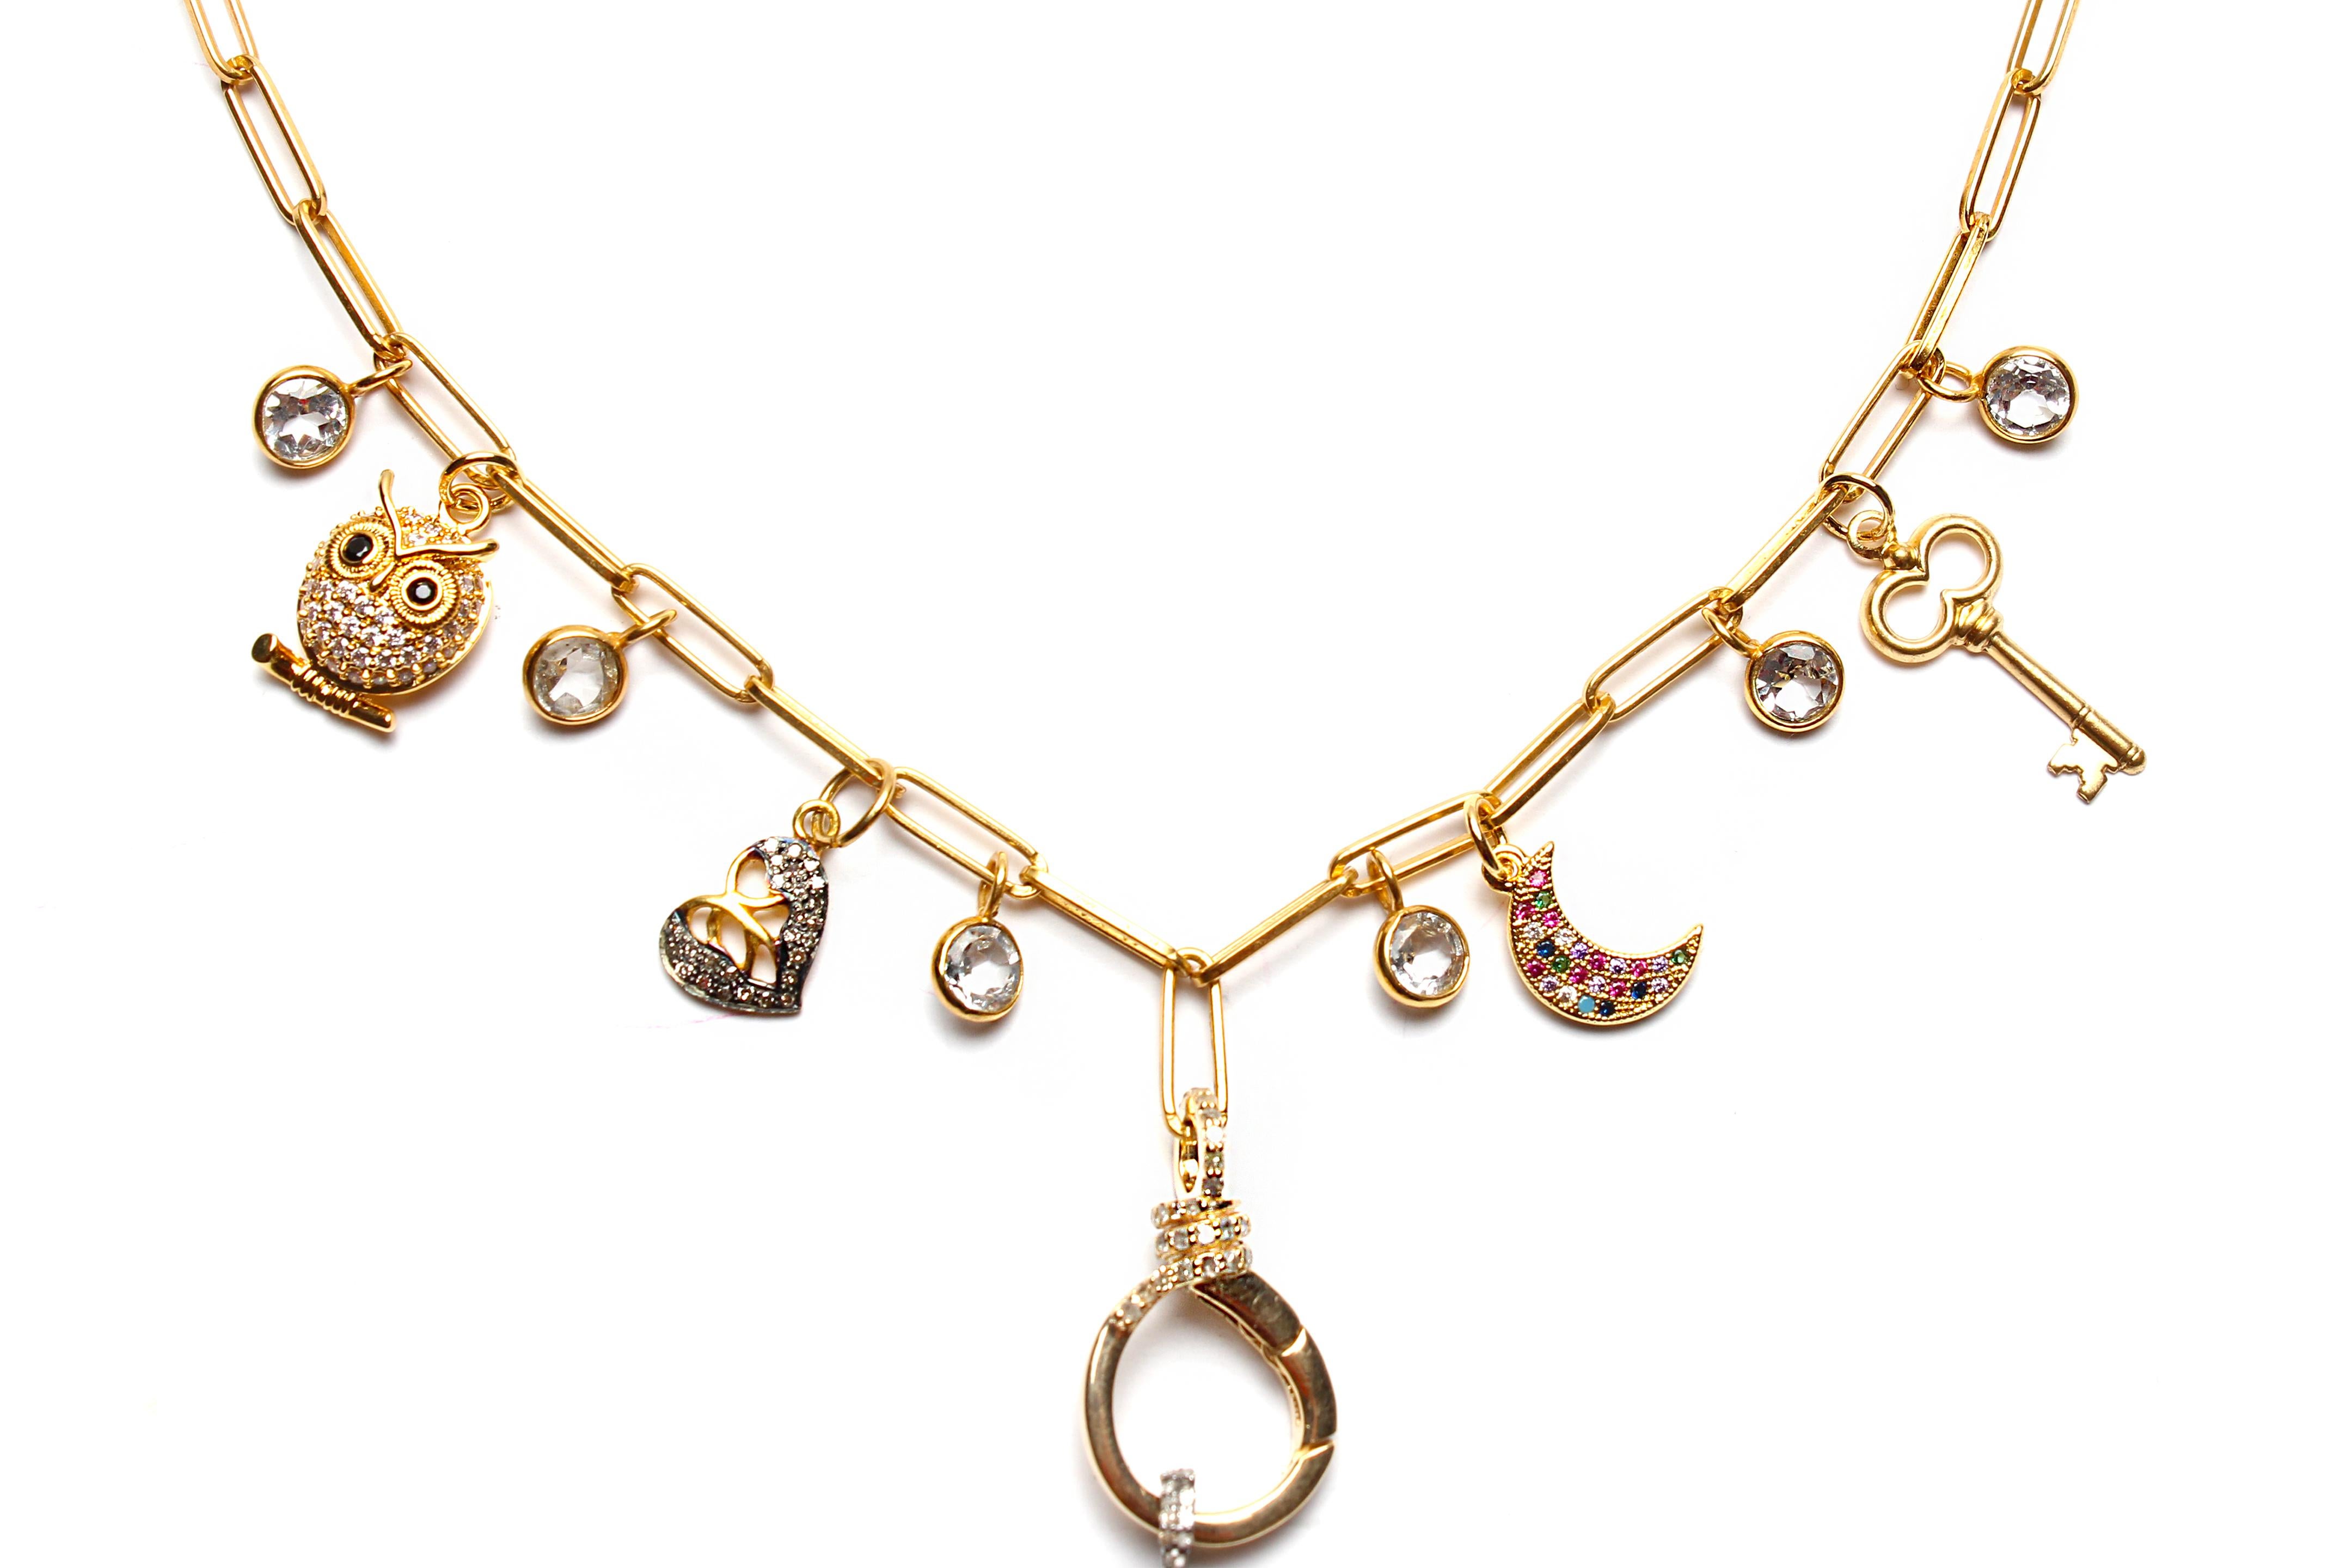 Clarissa Bronfman Signature Multi Charm Gold Ppr Clip Necklace & Tanzanite Charm For Sale 4